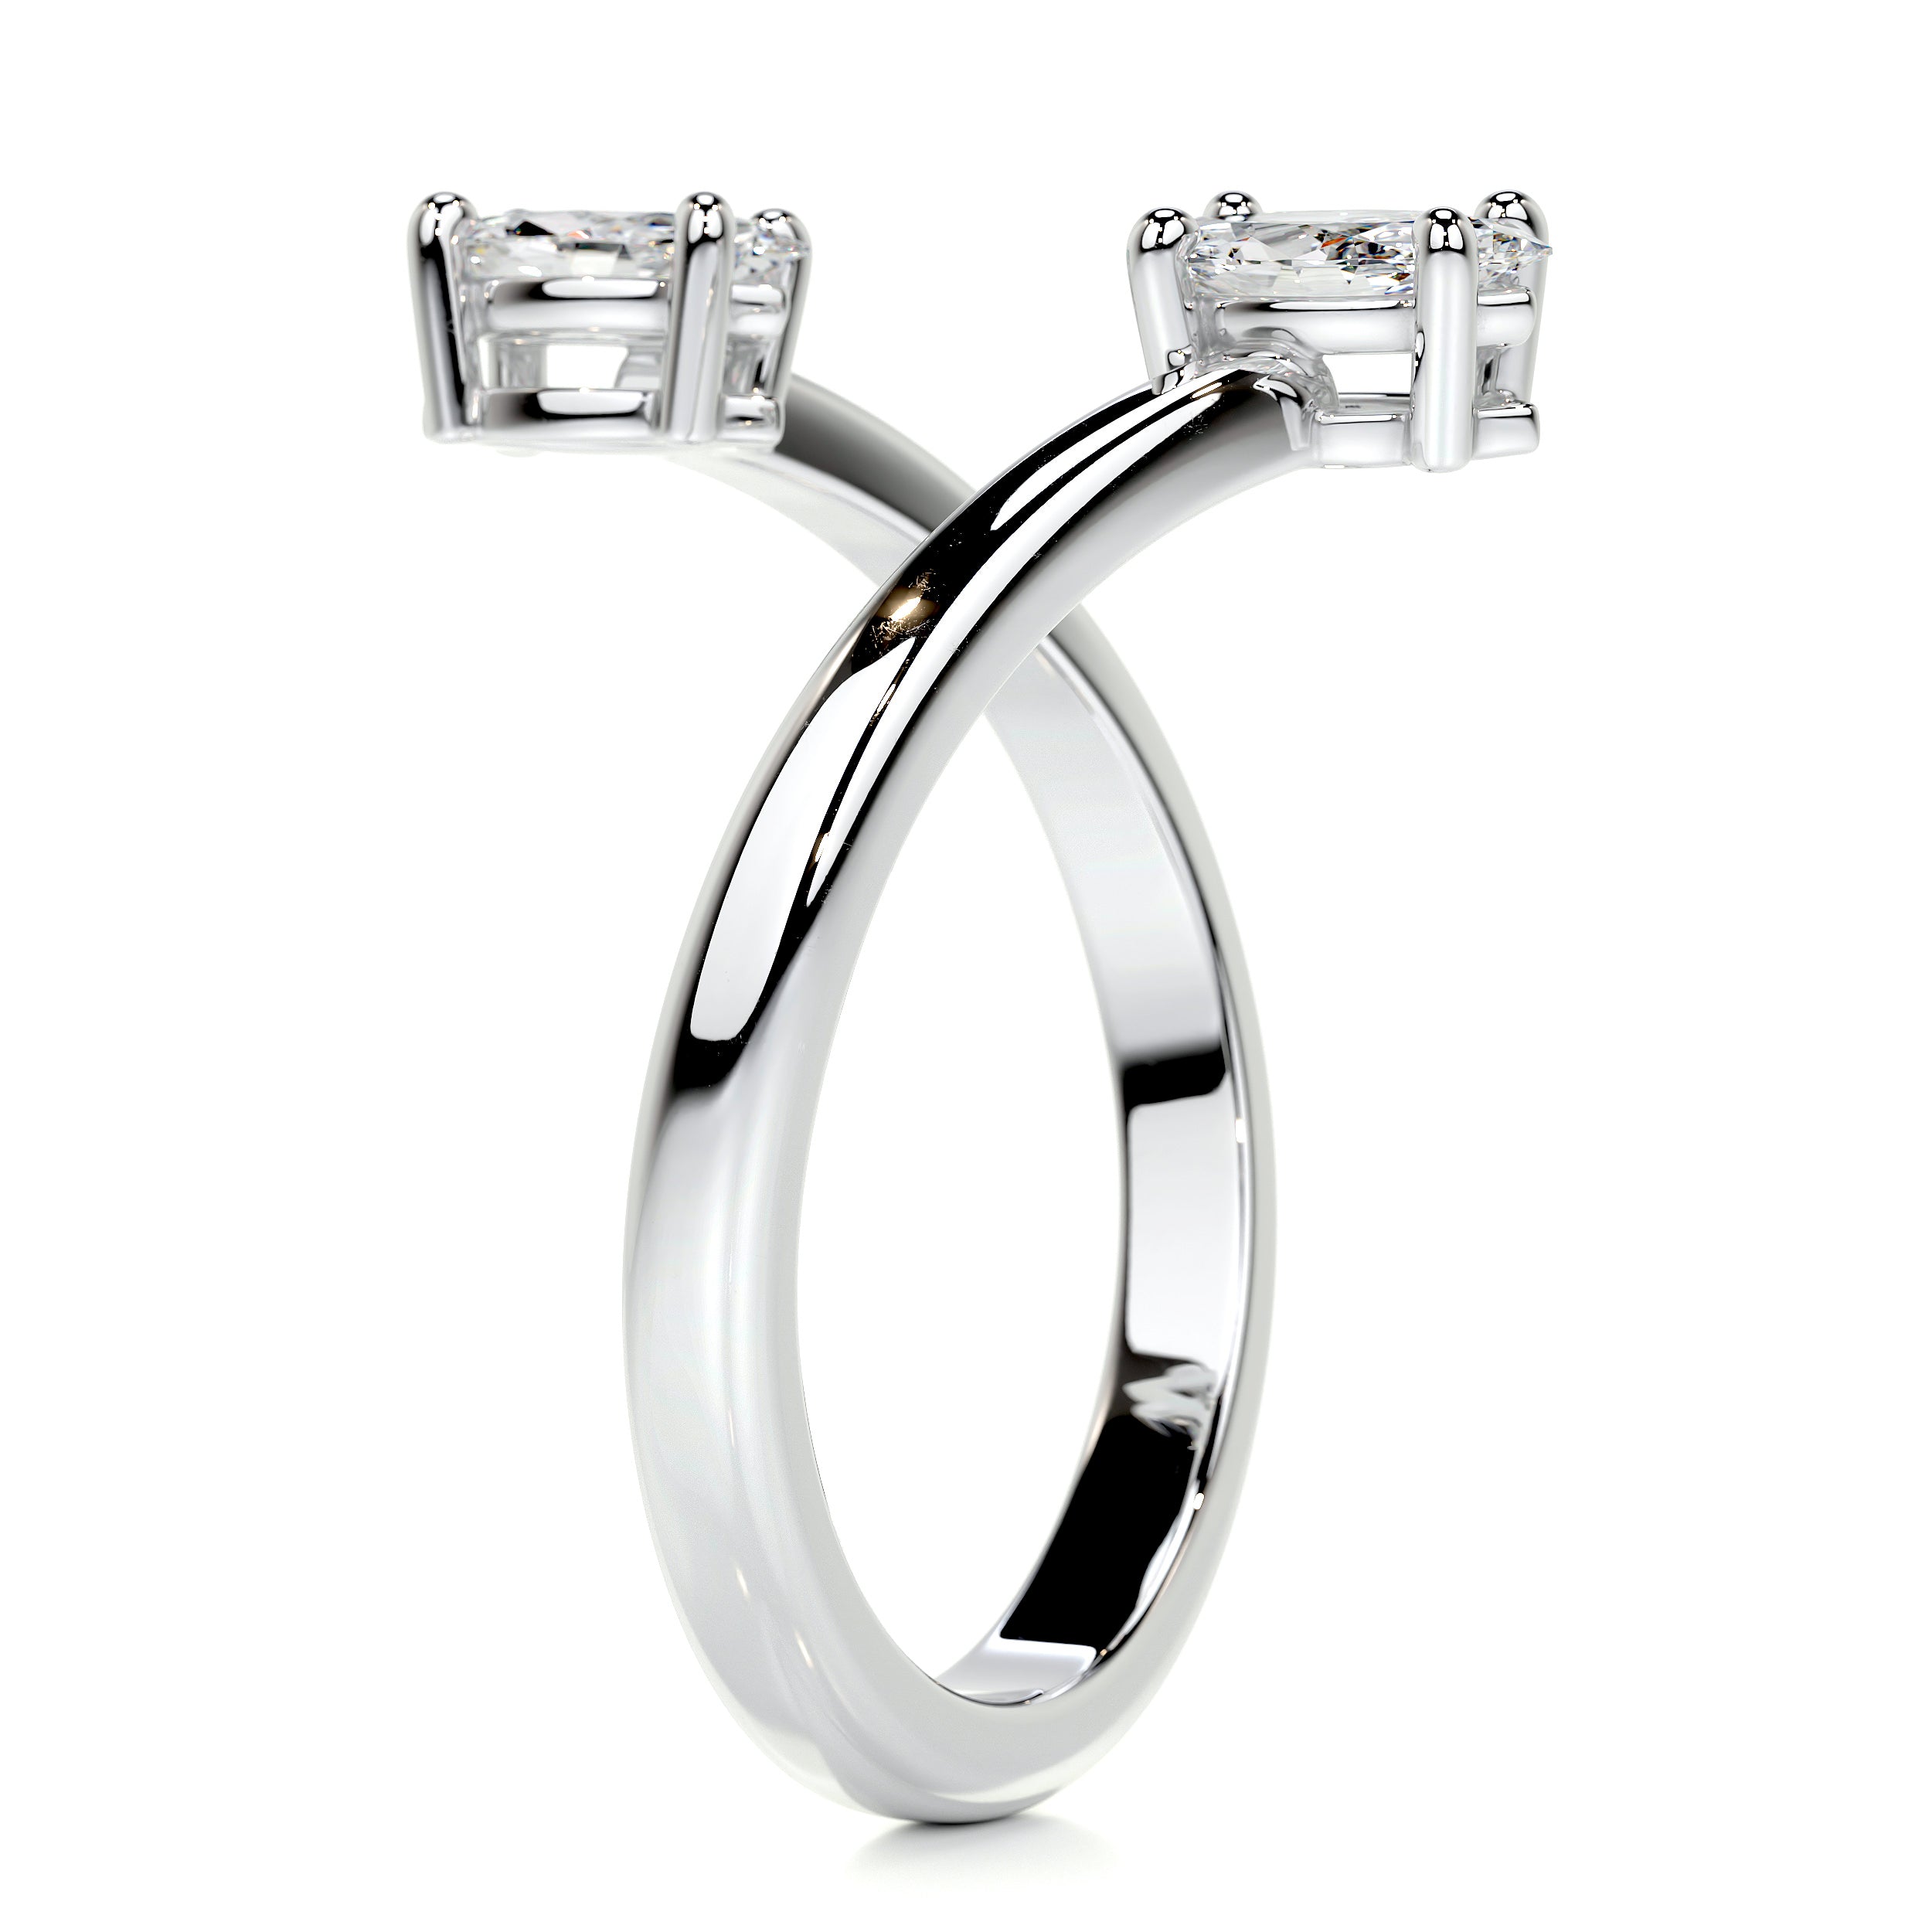 Anita Fashion Ring   (0.36 Carat) -14K White Gold